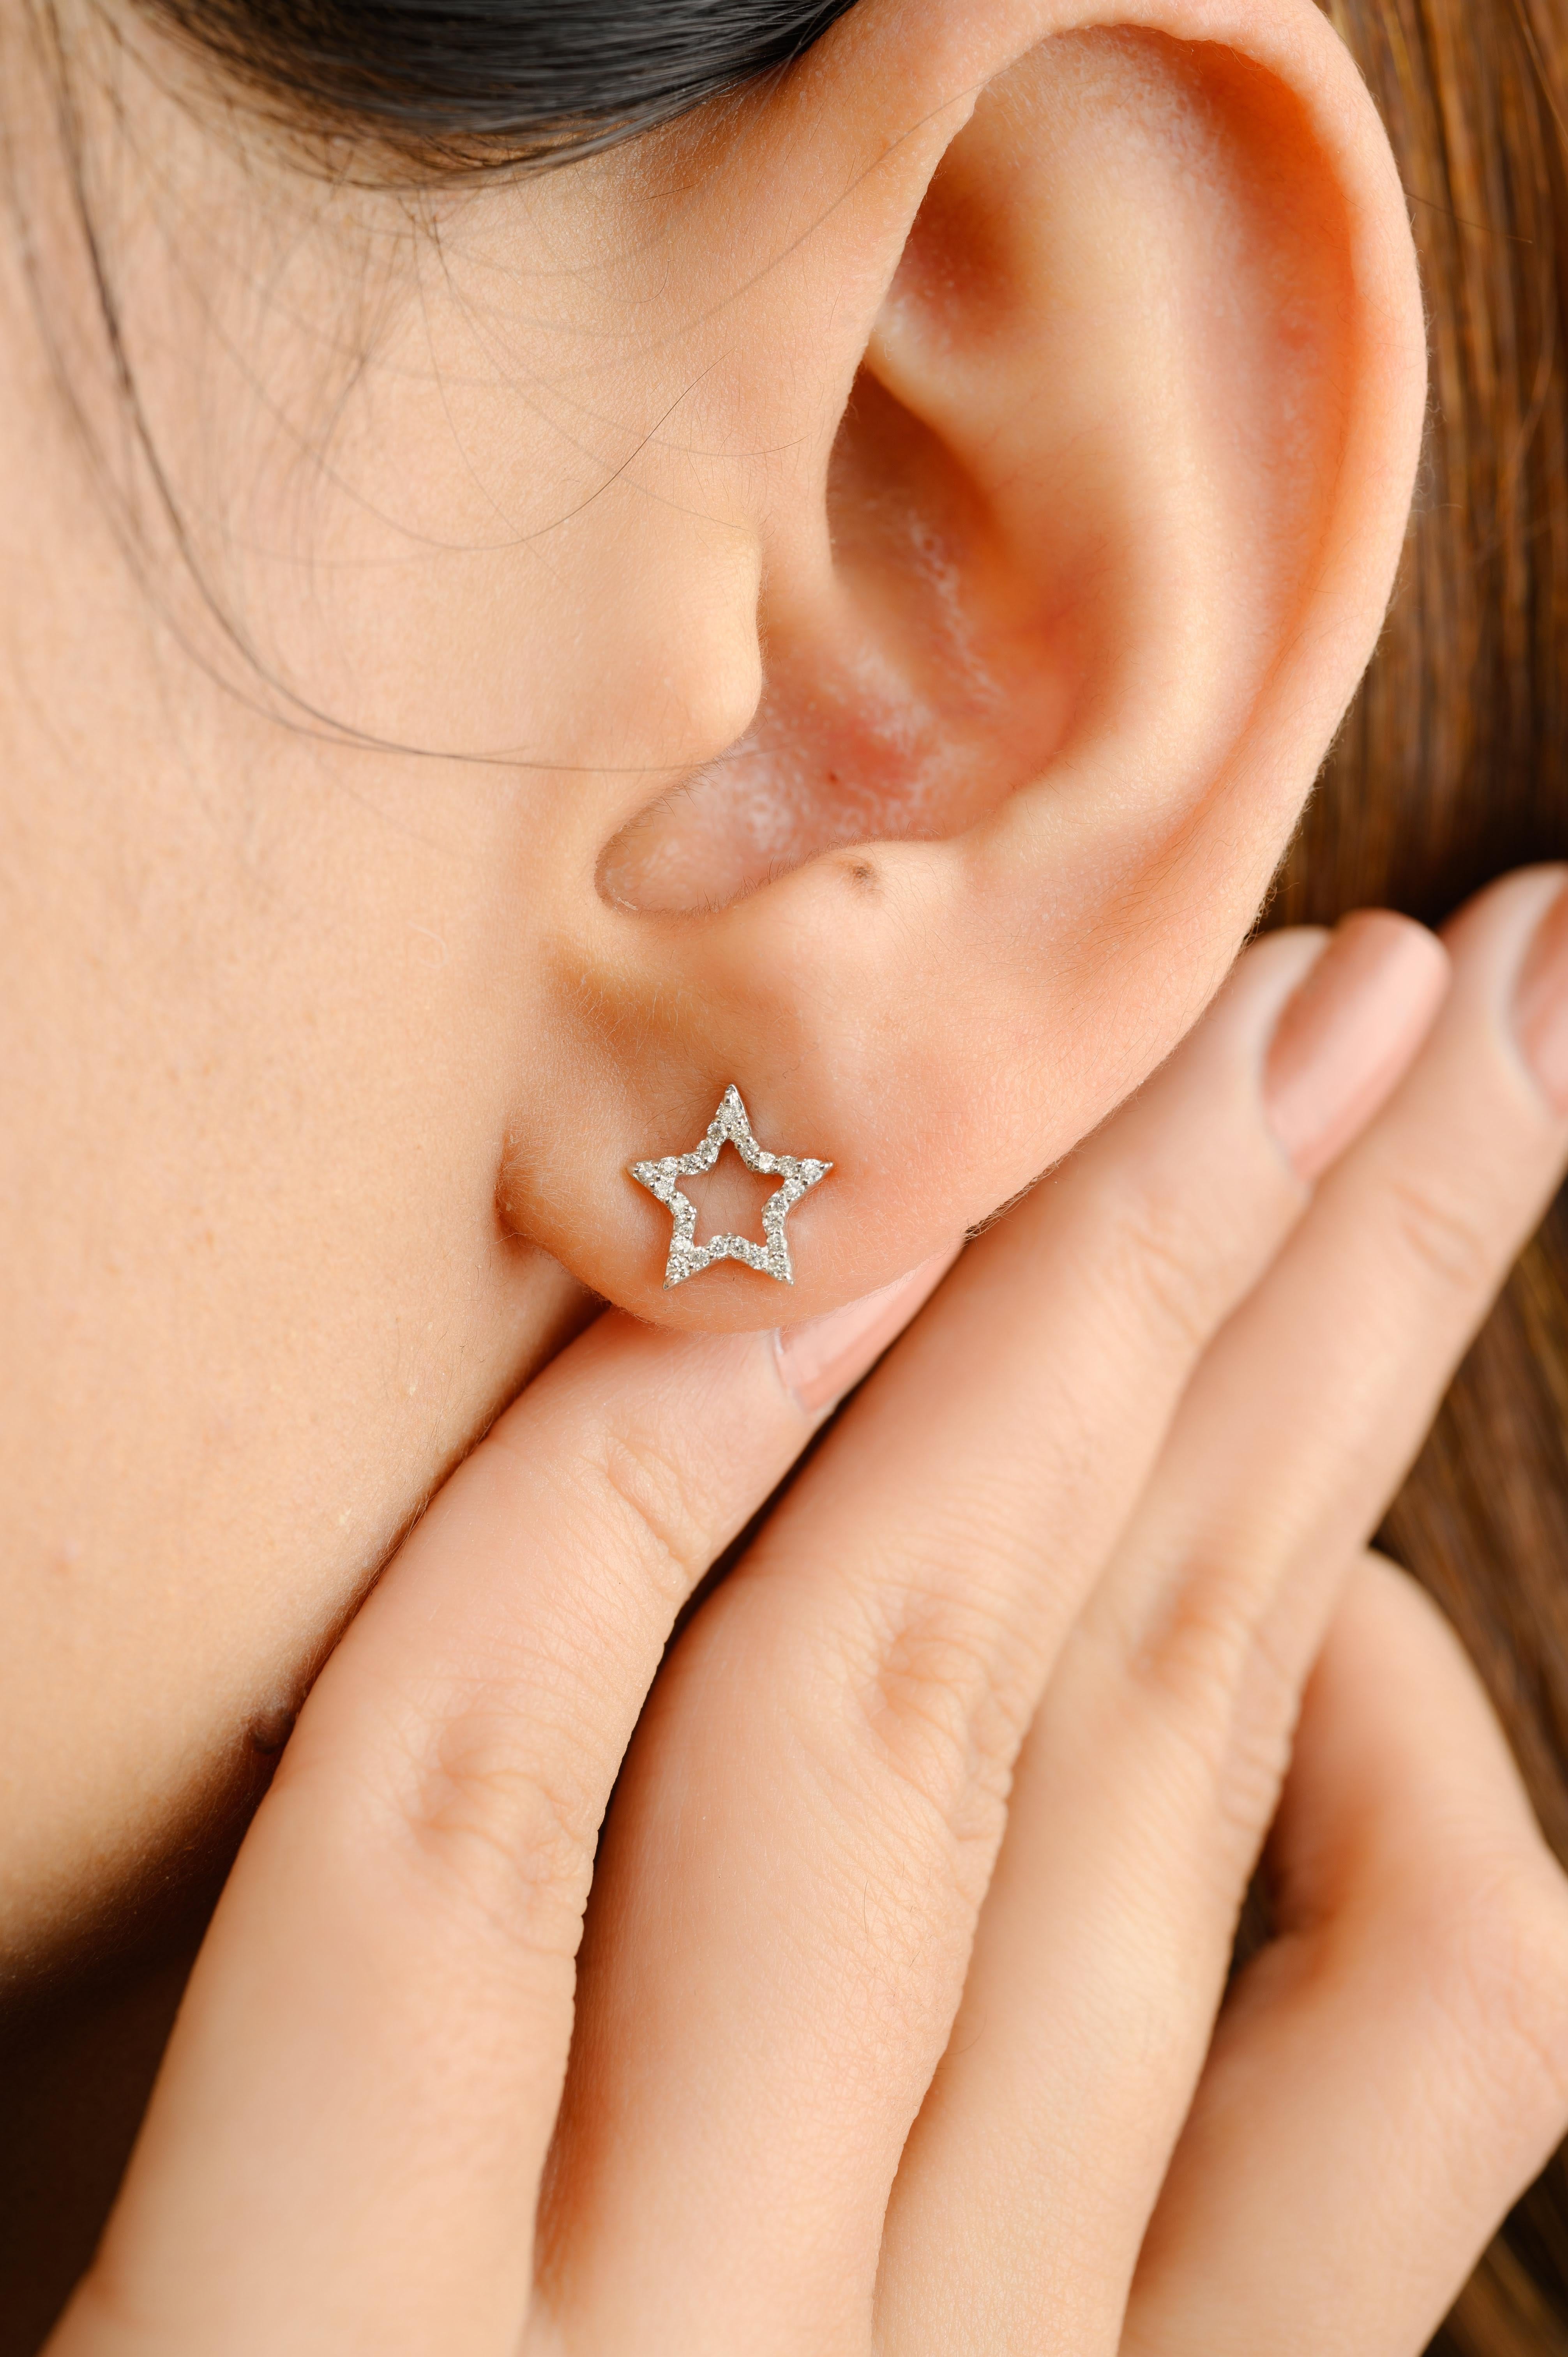 Star-Ohrstecker mit Naturdiamanten aus 18-karätigem Gold, um Ihren Look zu unterstreichen. Sie brauchen Ohrstecker, um mit Ihrem Look ein Statement zu setzen. Diese Ohrringe mit rundgeschliffenen Diamanten sorgen für einen funkelnden, luxuriösen